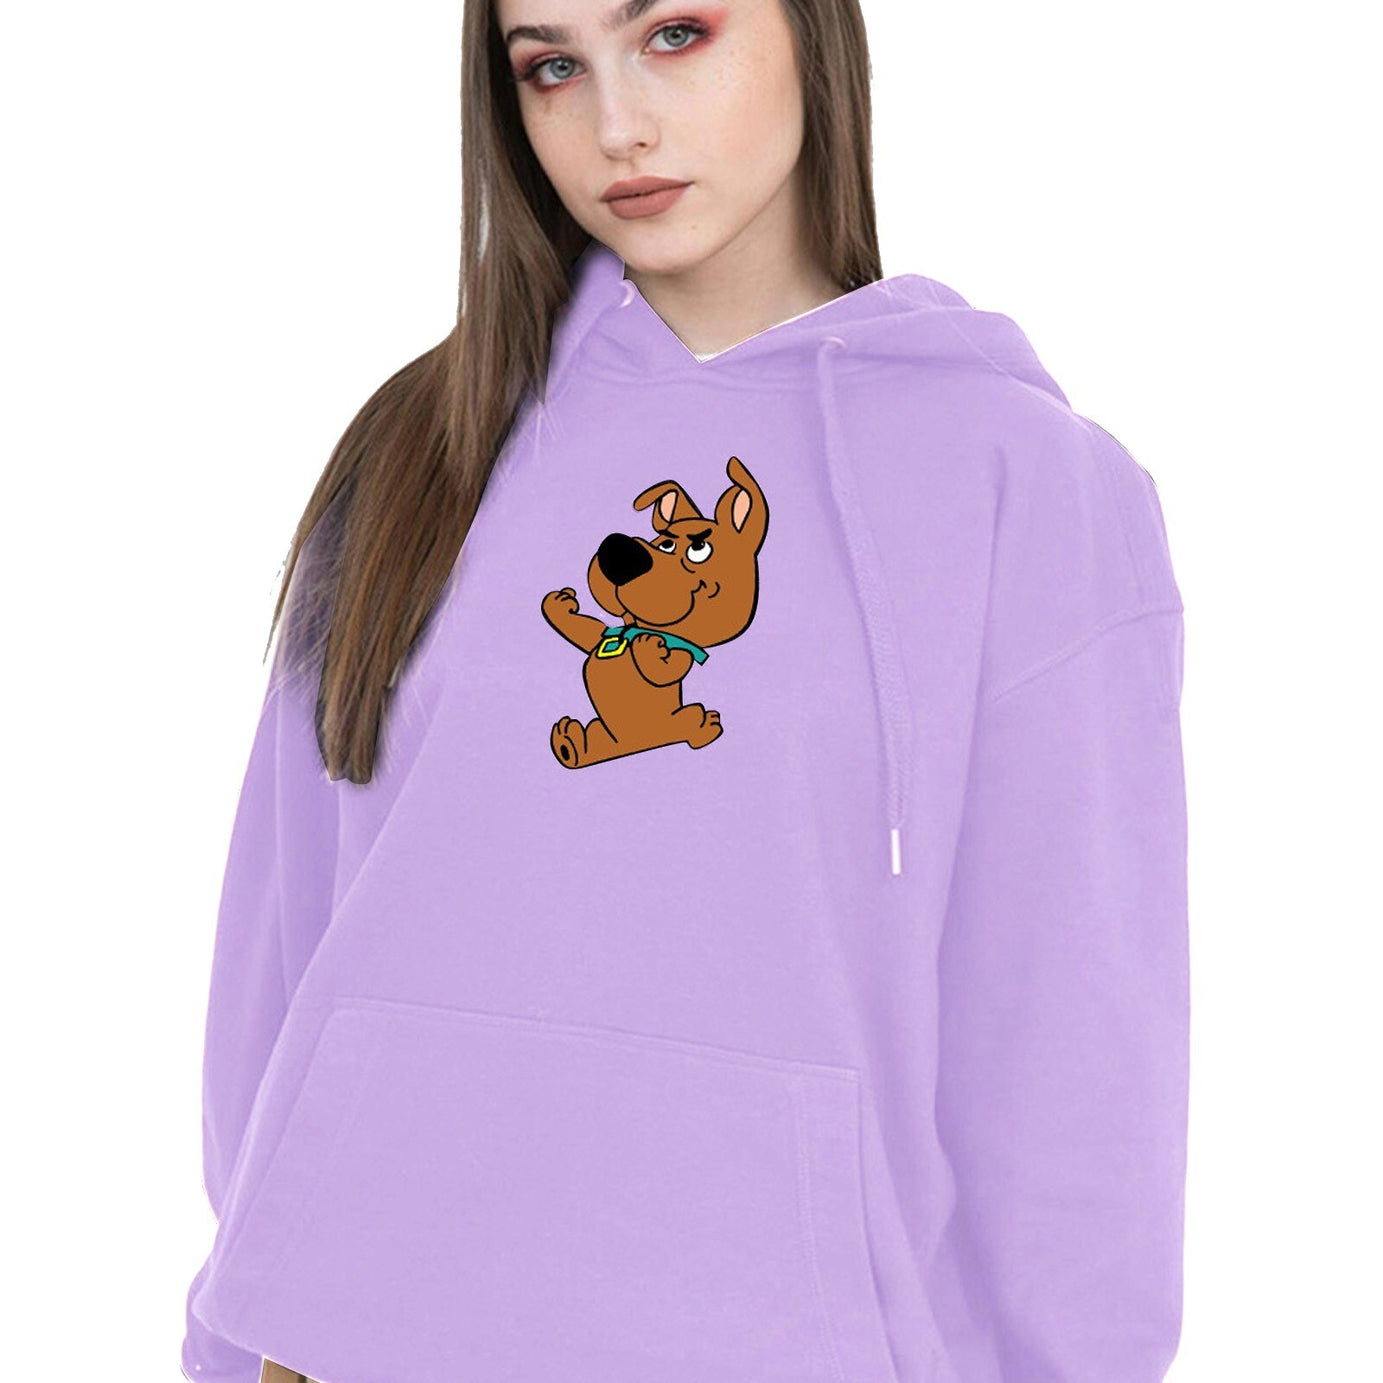 Scooby Doo Kapuzenpullover